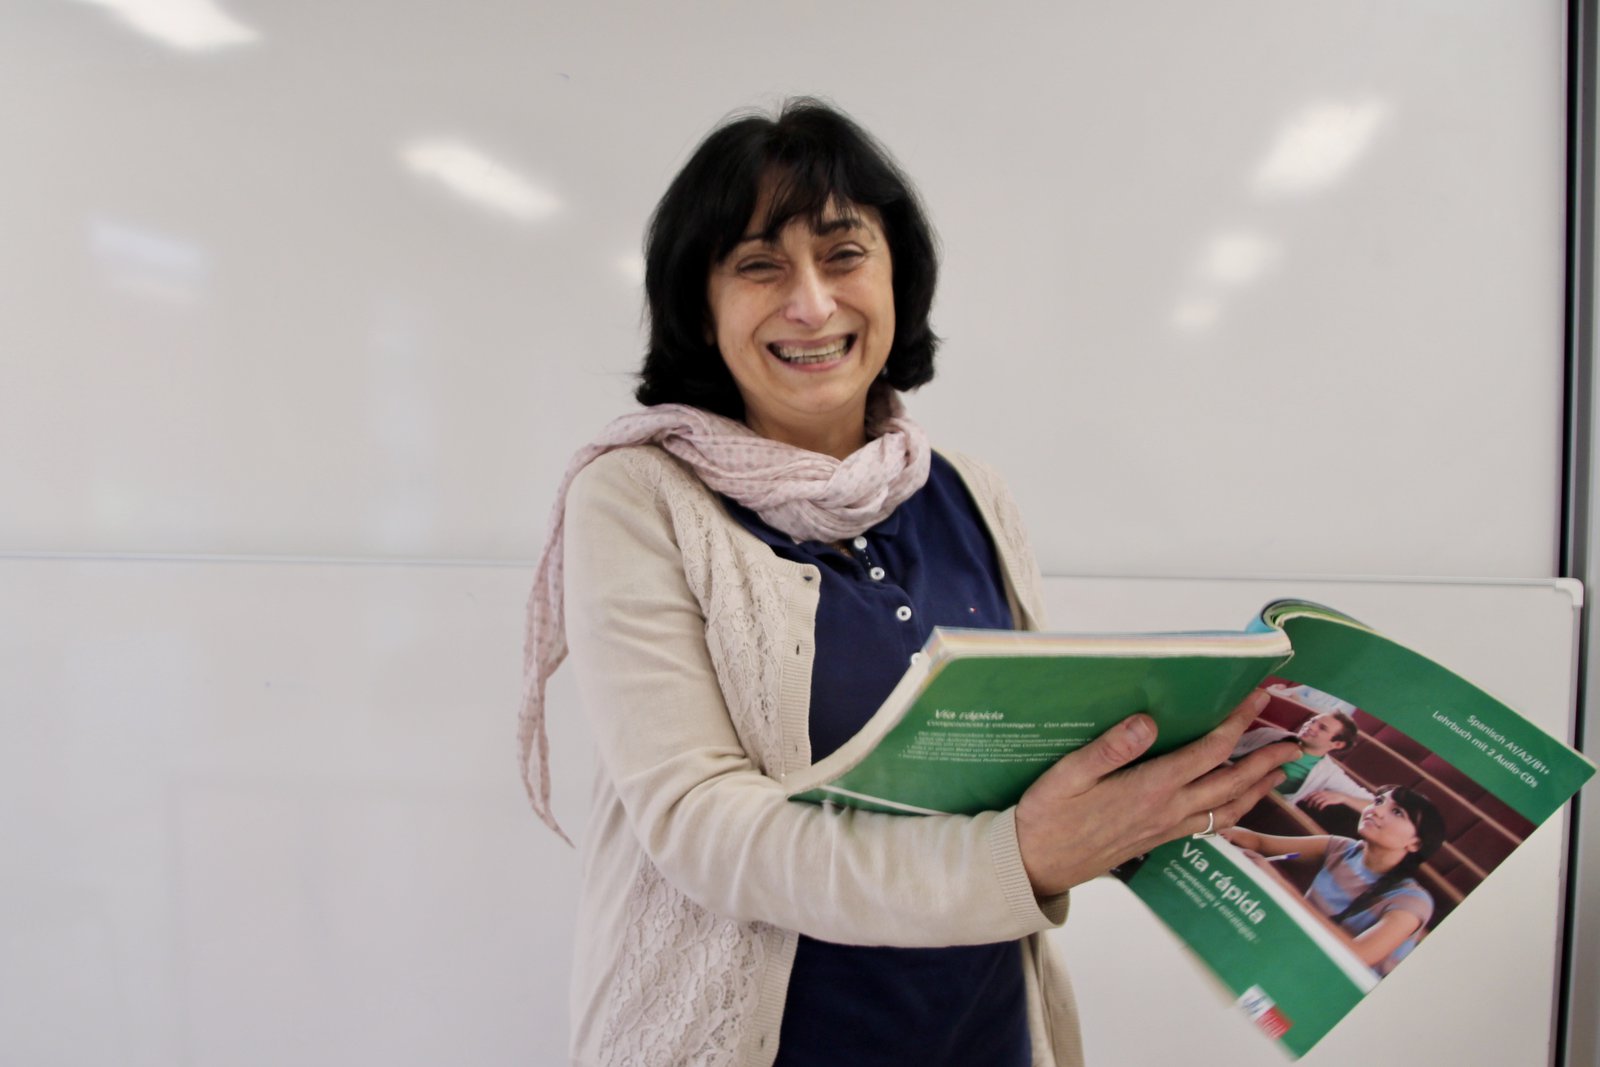 Eine breit lächelnde Frau, mit einem großen, grünen Lehrbuch in der Hand.